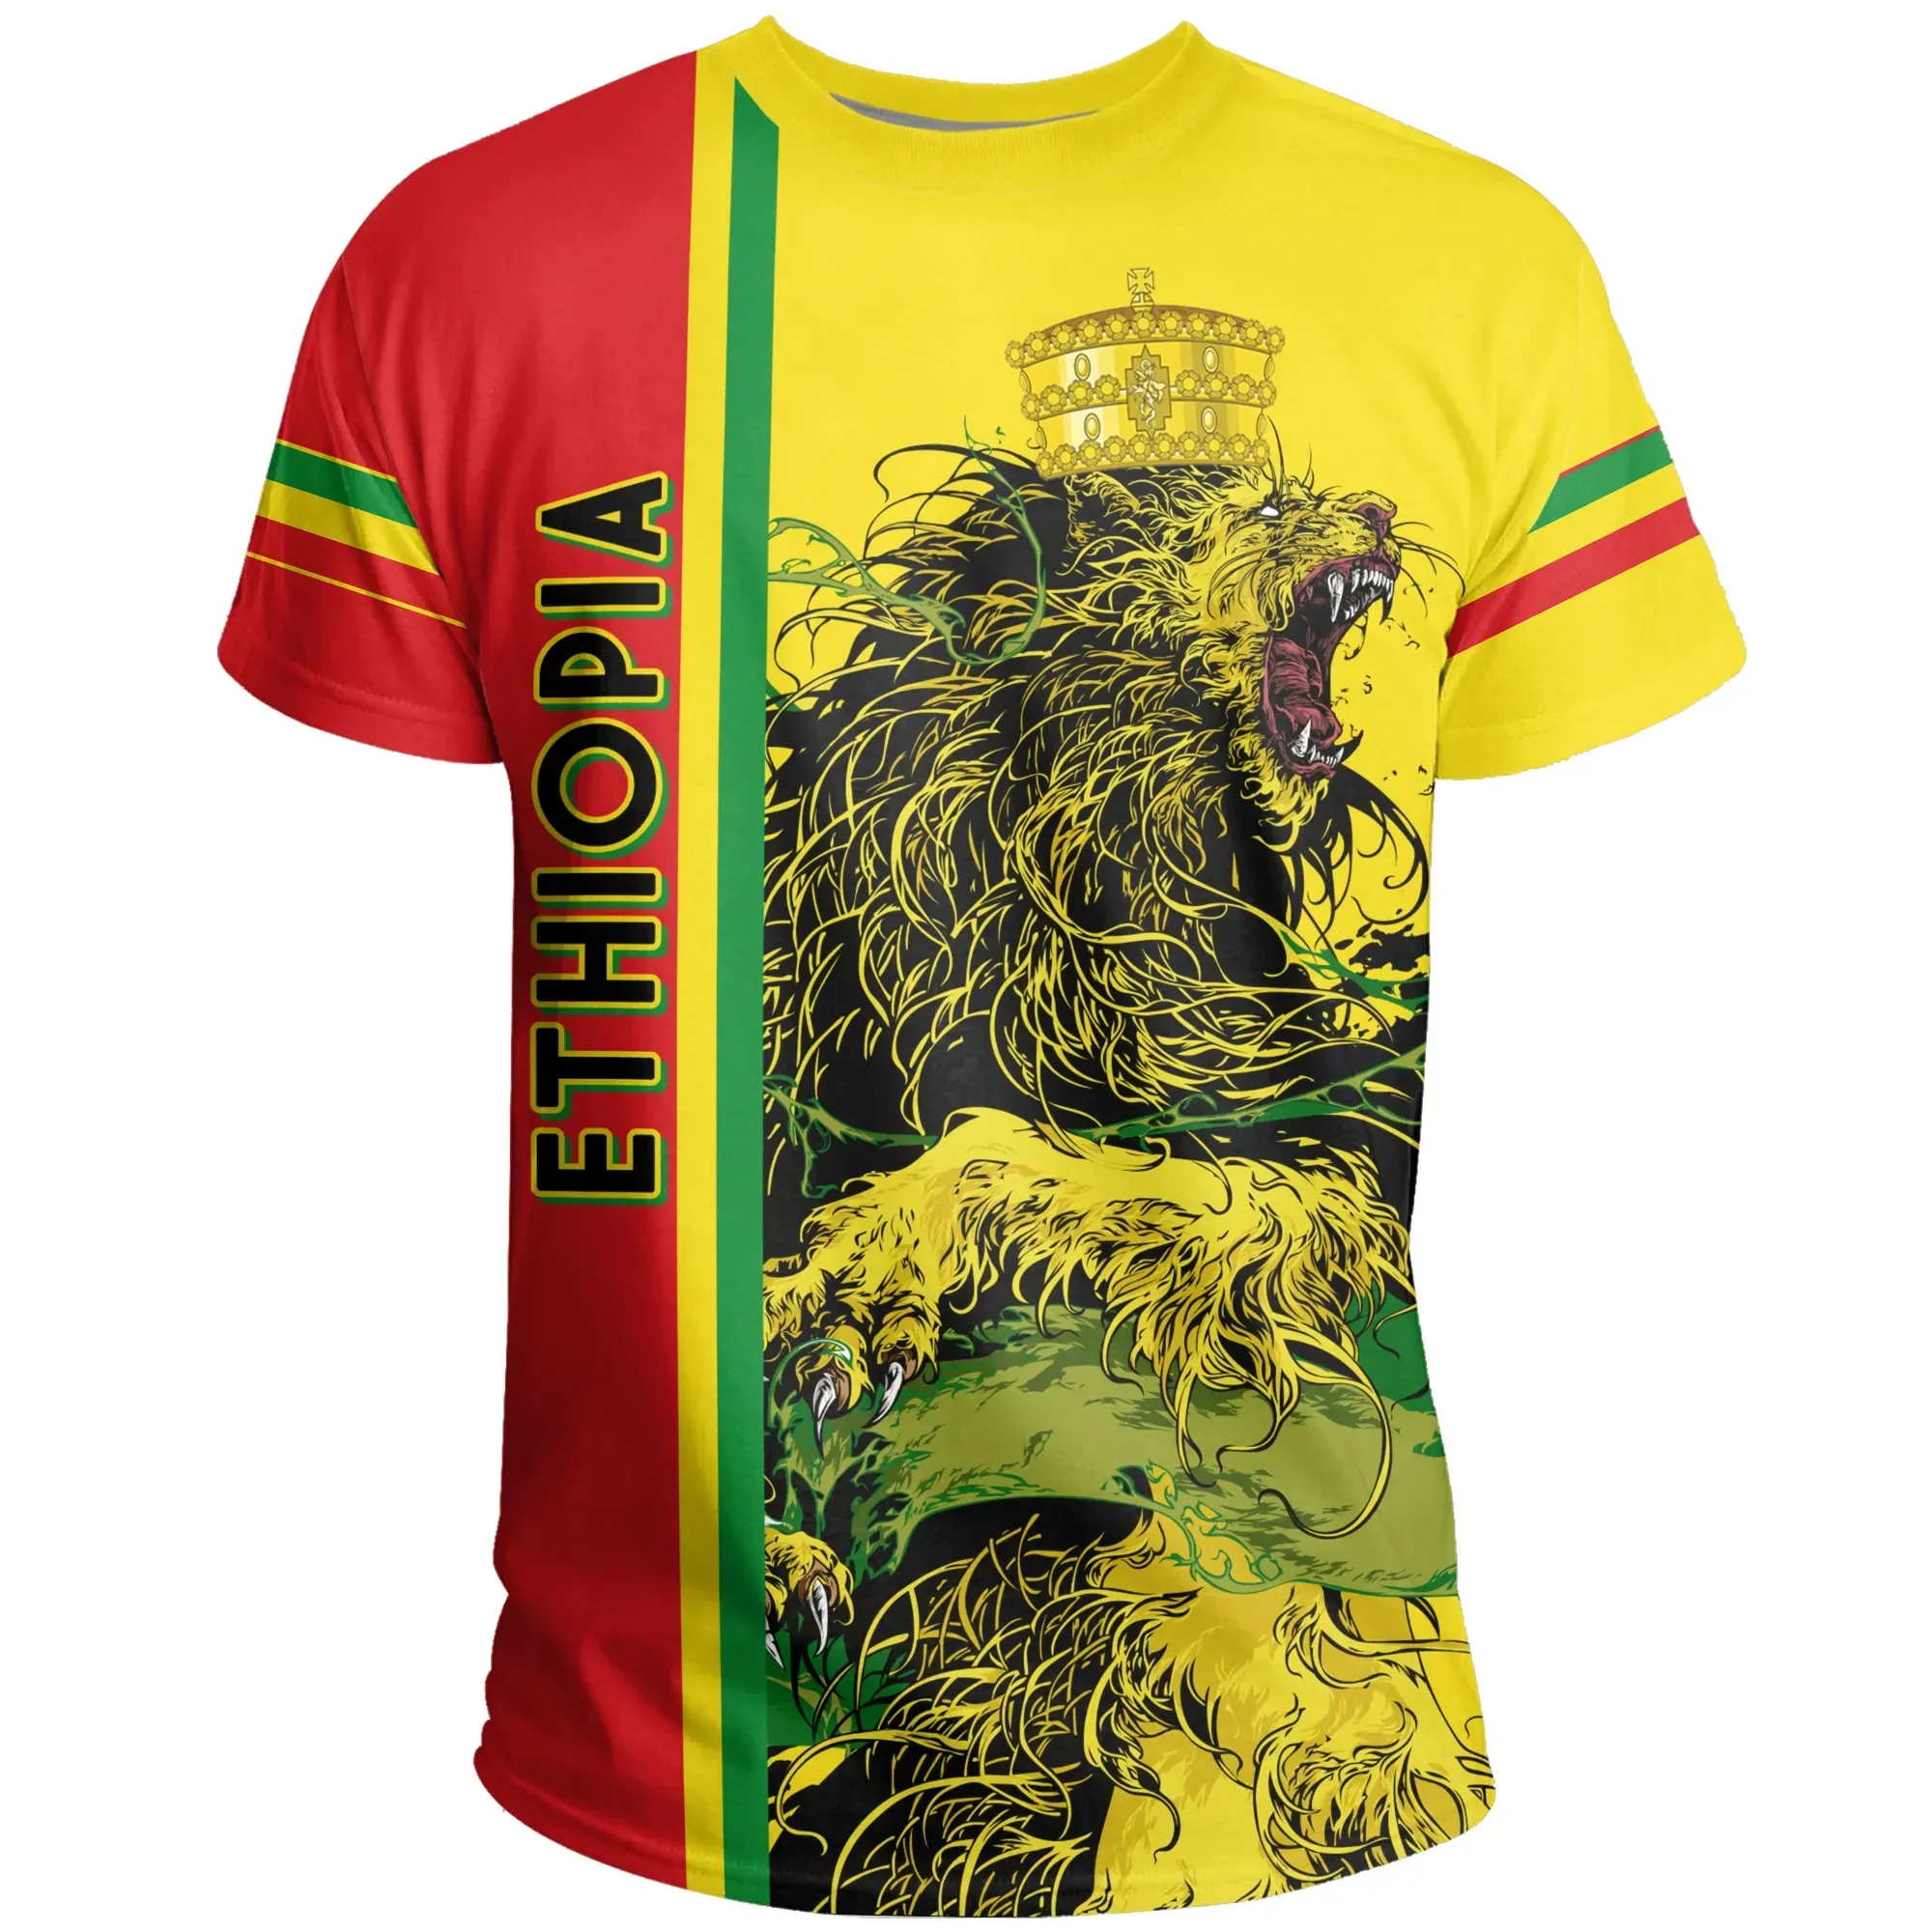 African T-shirt – Kente Fabric Kwanzaa Gash Style Tee